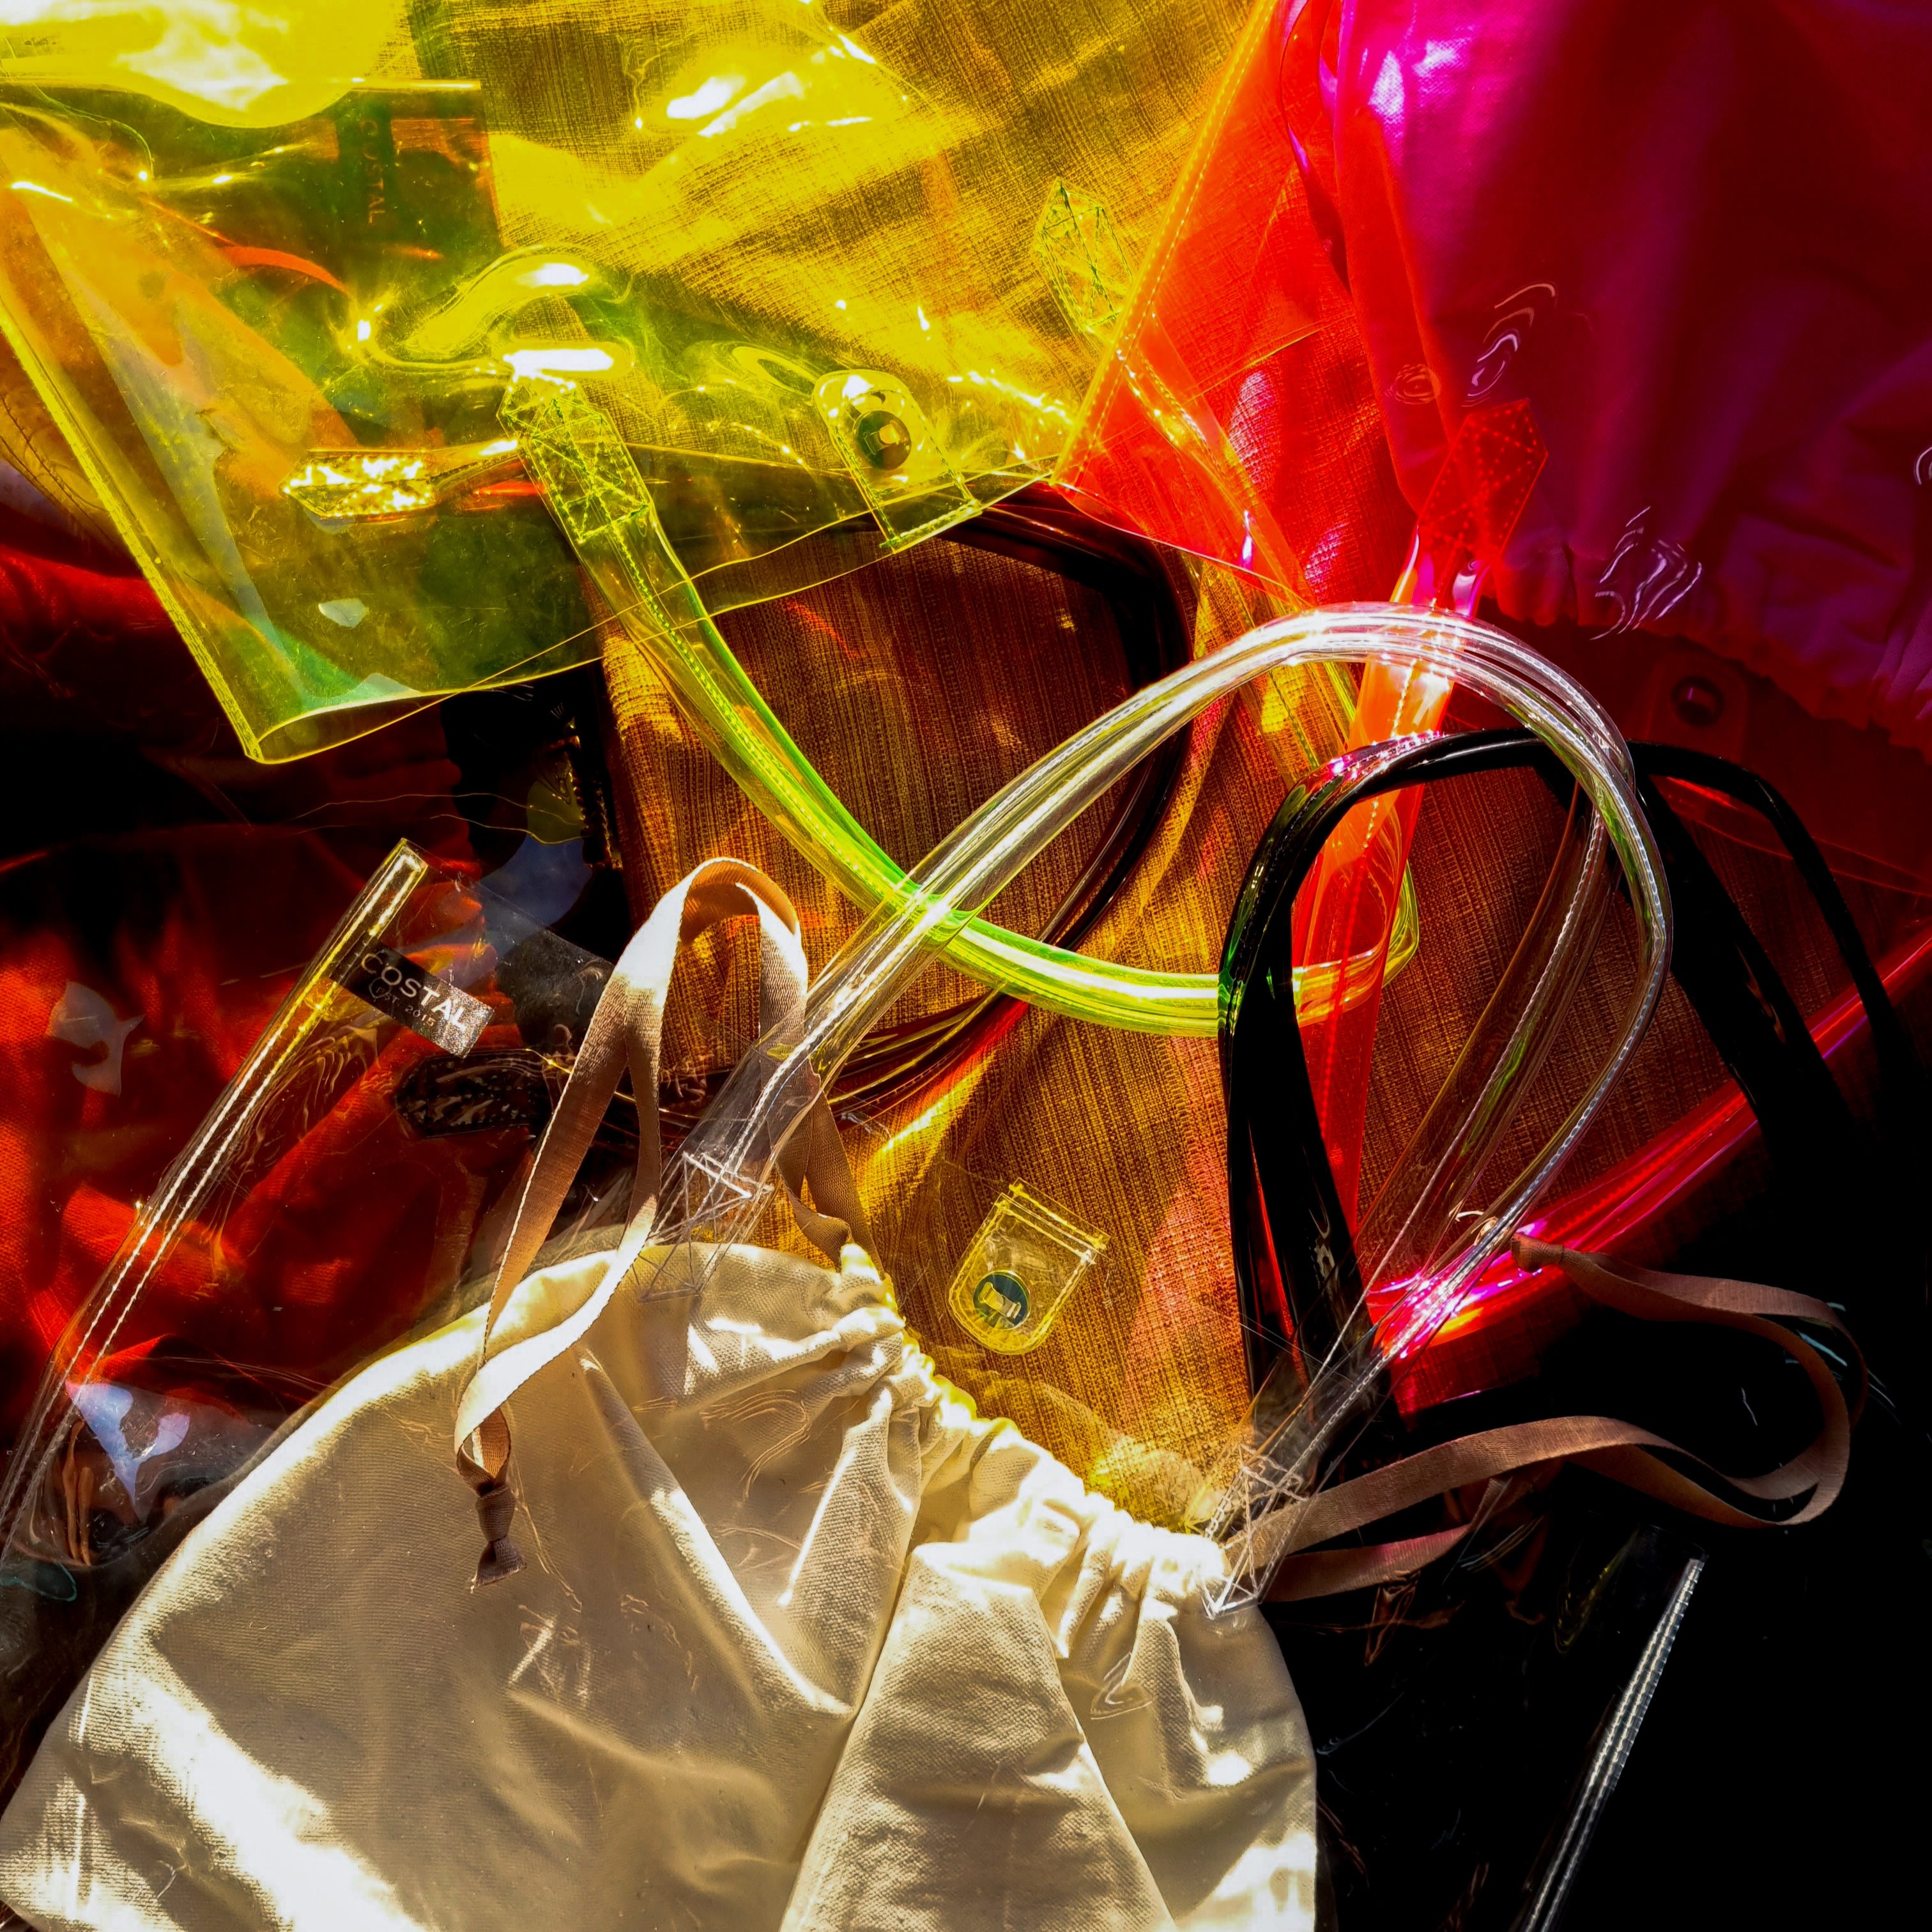 pvc tote bags in various colors